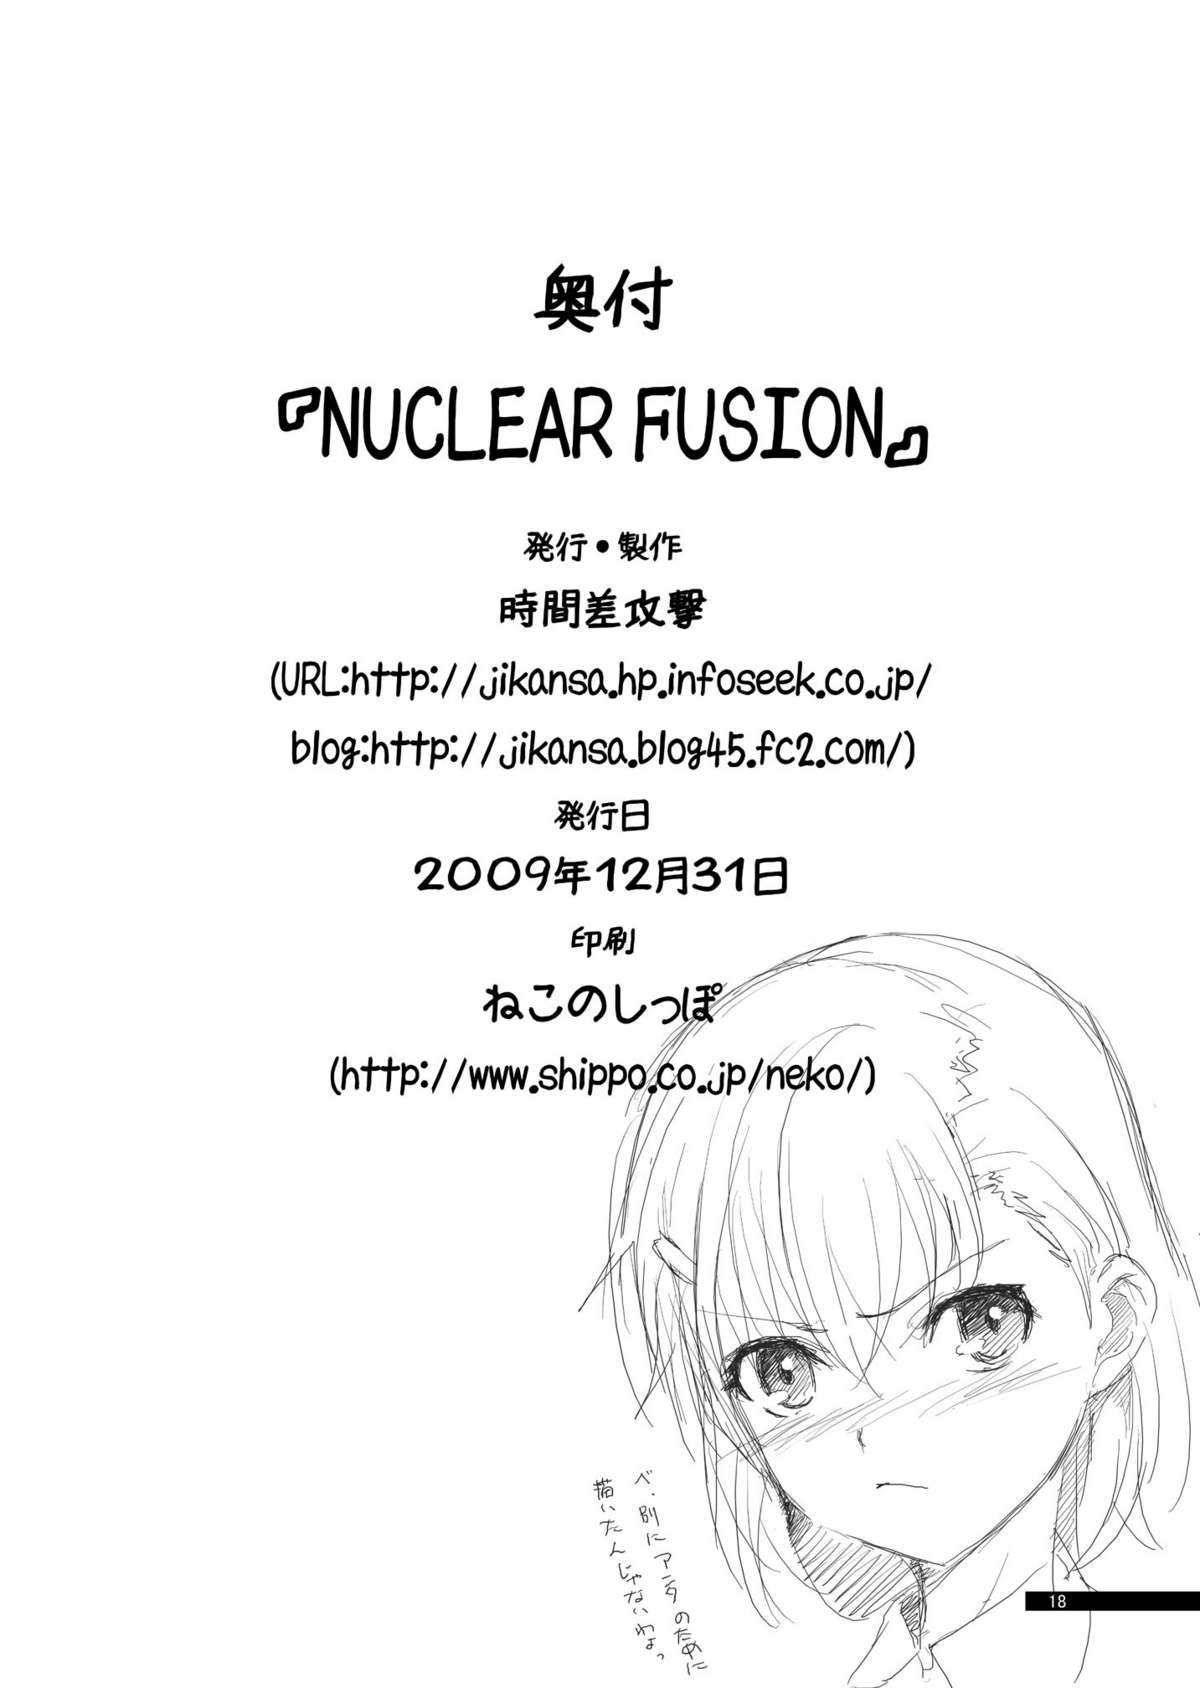 [JIKANSAKOUGEKI] NUCLEAR FUSION (Toaru Kagaku no Railgun) [時間差攻撃] NUCLEAR FUSION (とある科学の超電磁砲)